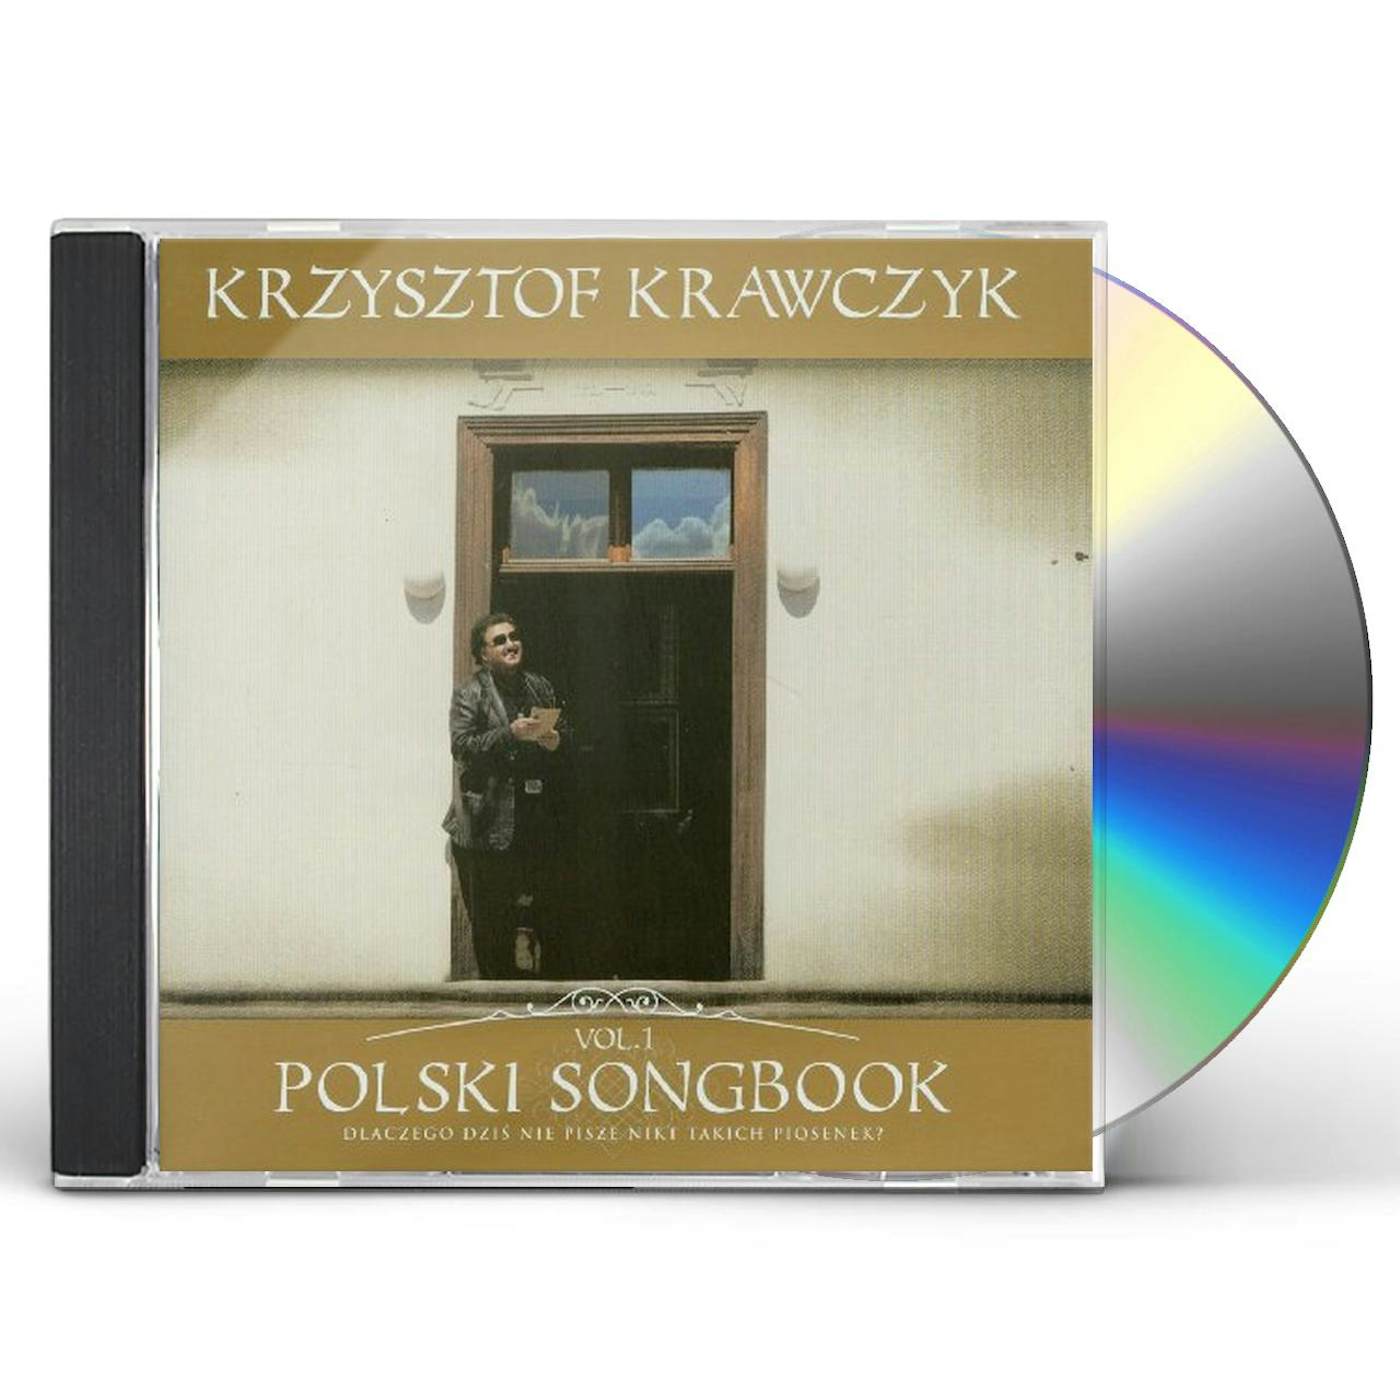 Krzysztof Krawczyk POLSKI SONGBOOK 1 CD